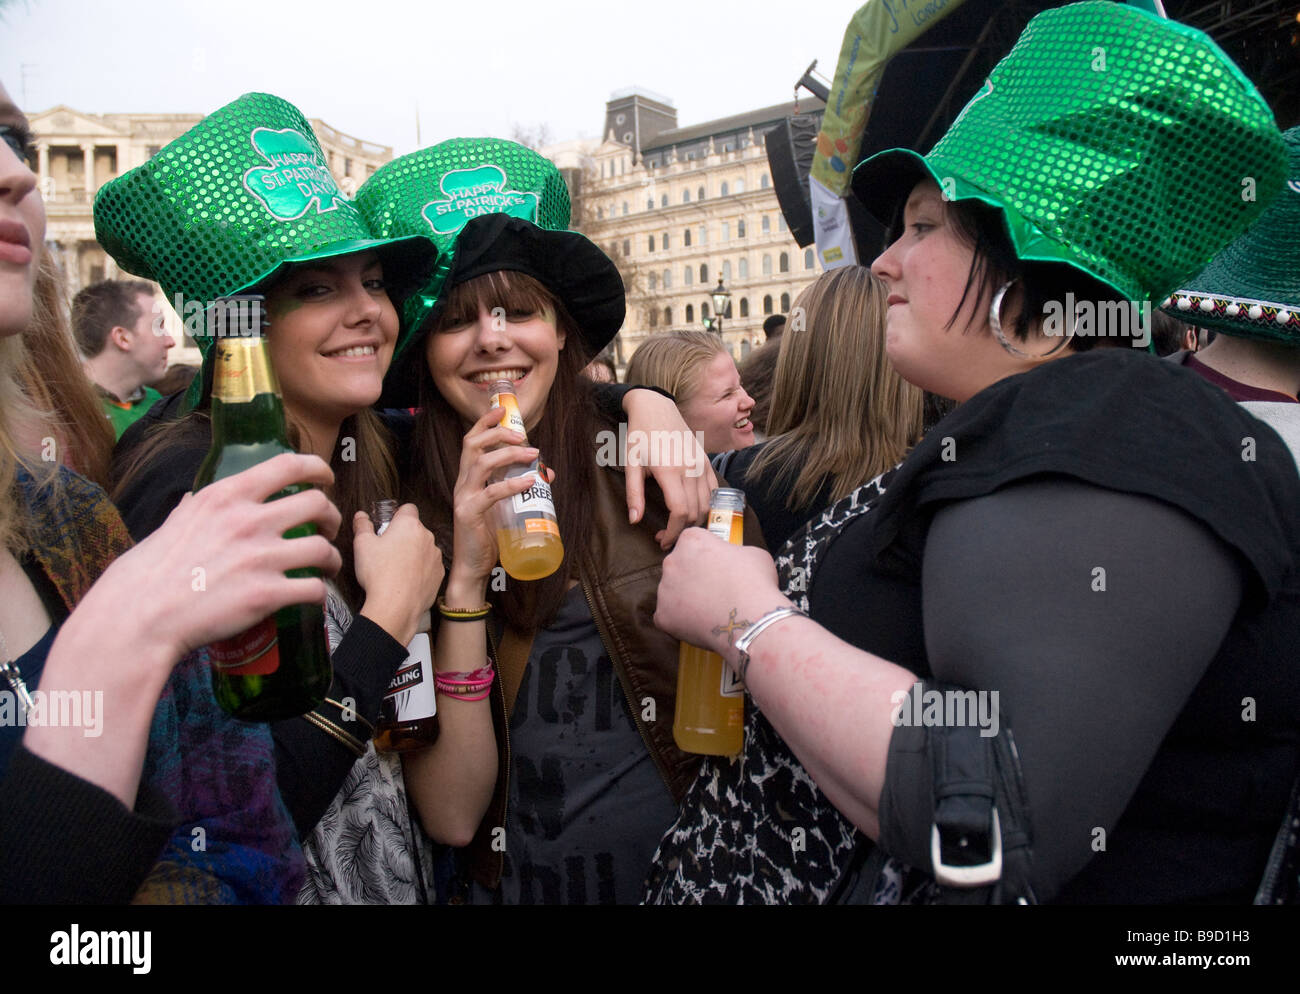 St Patrick’s day celebrations in Trafalgar Square Stock Photo